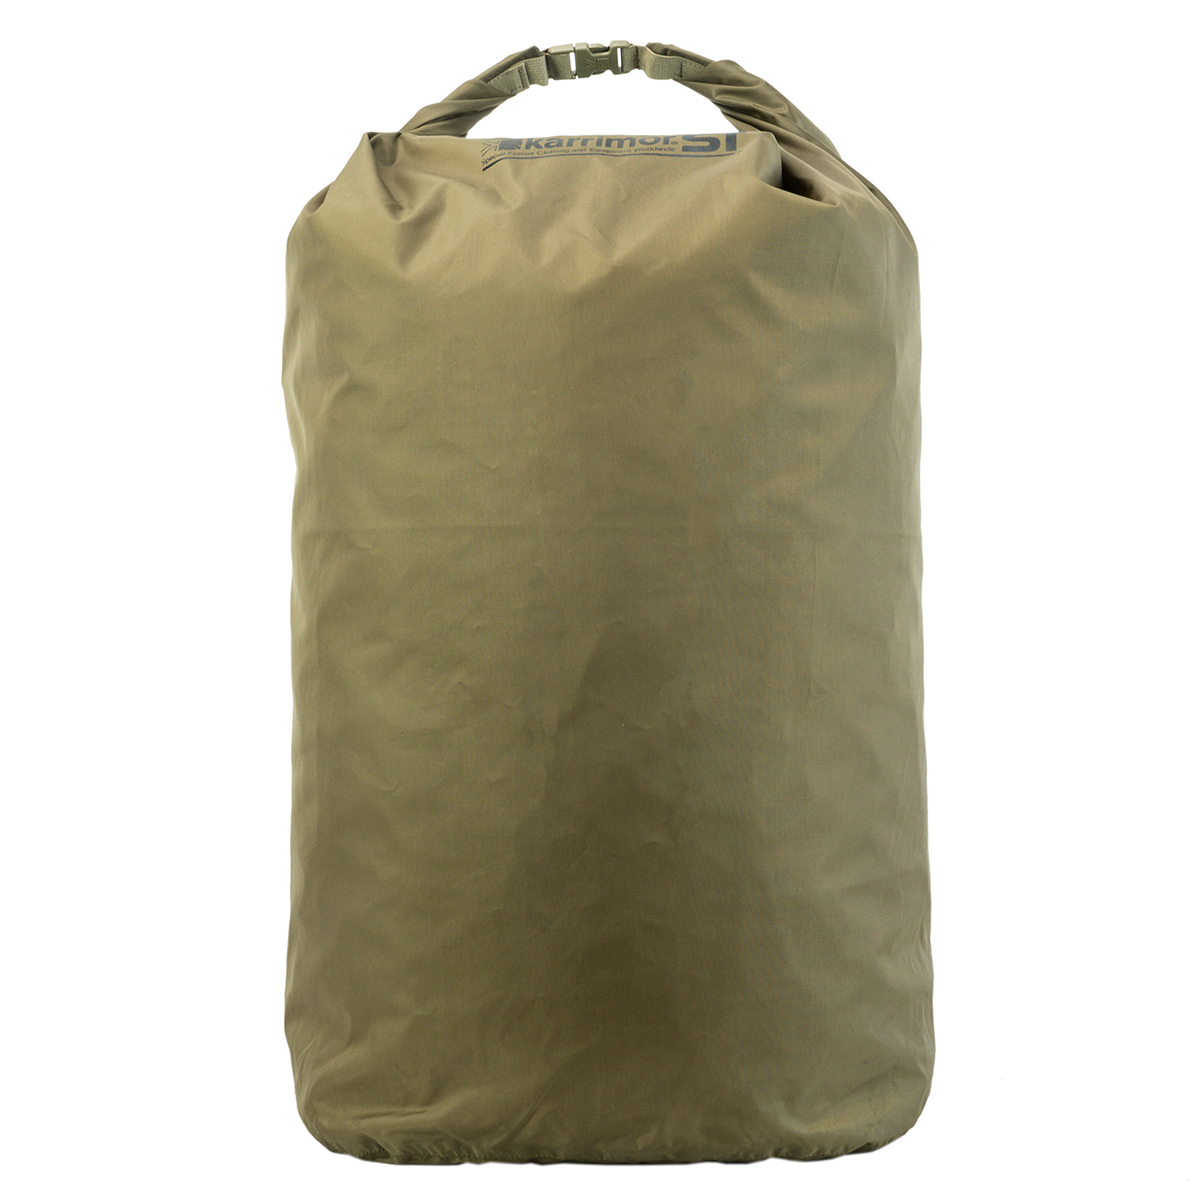 DRY BAG, Karrimor SF, dry bag vreča, suha vreča, B33 TACTICAL, outdoor oprema, Trgovina z vojaško opremo, Vojaška trgovina